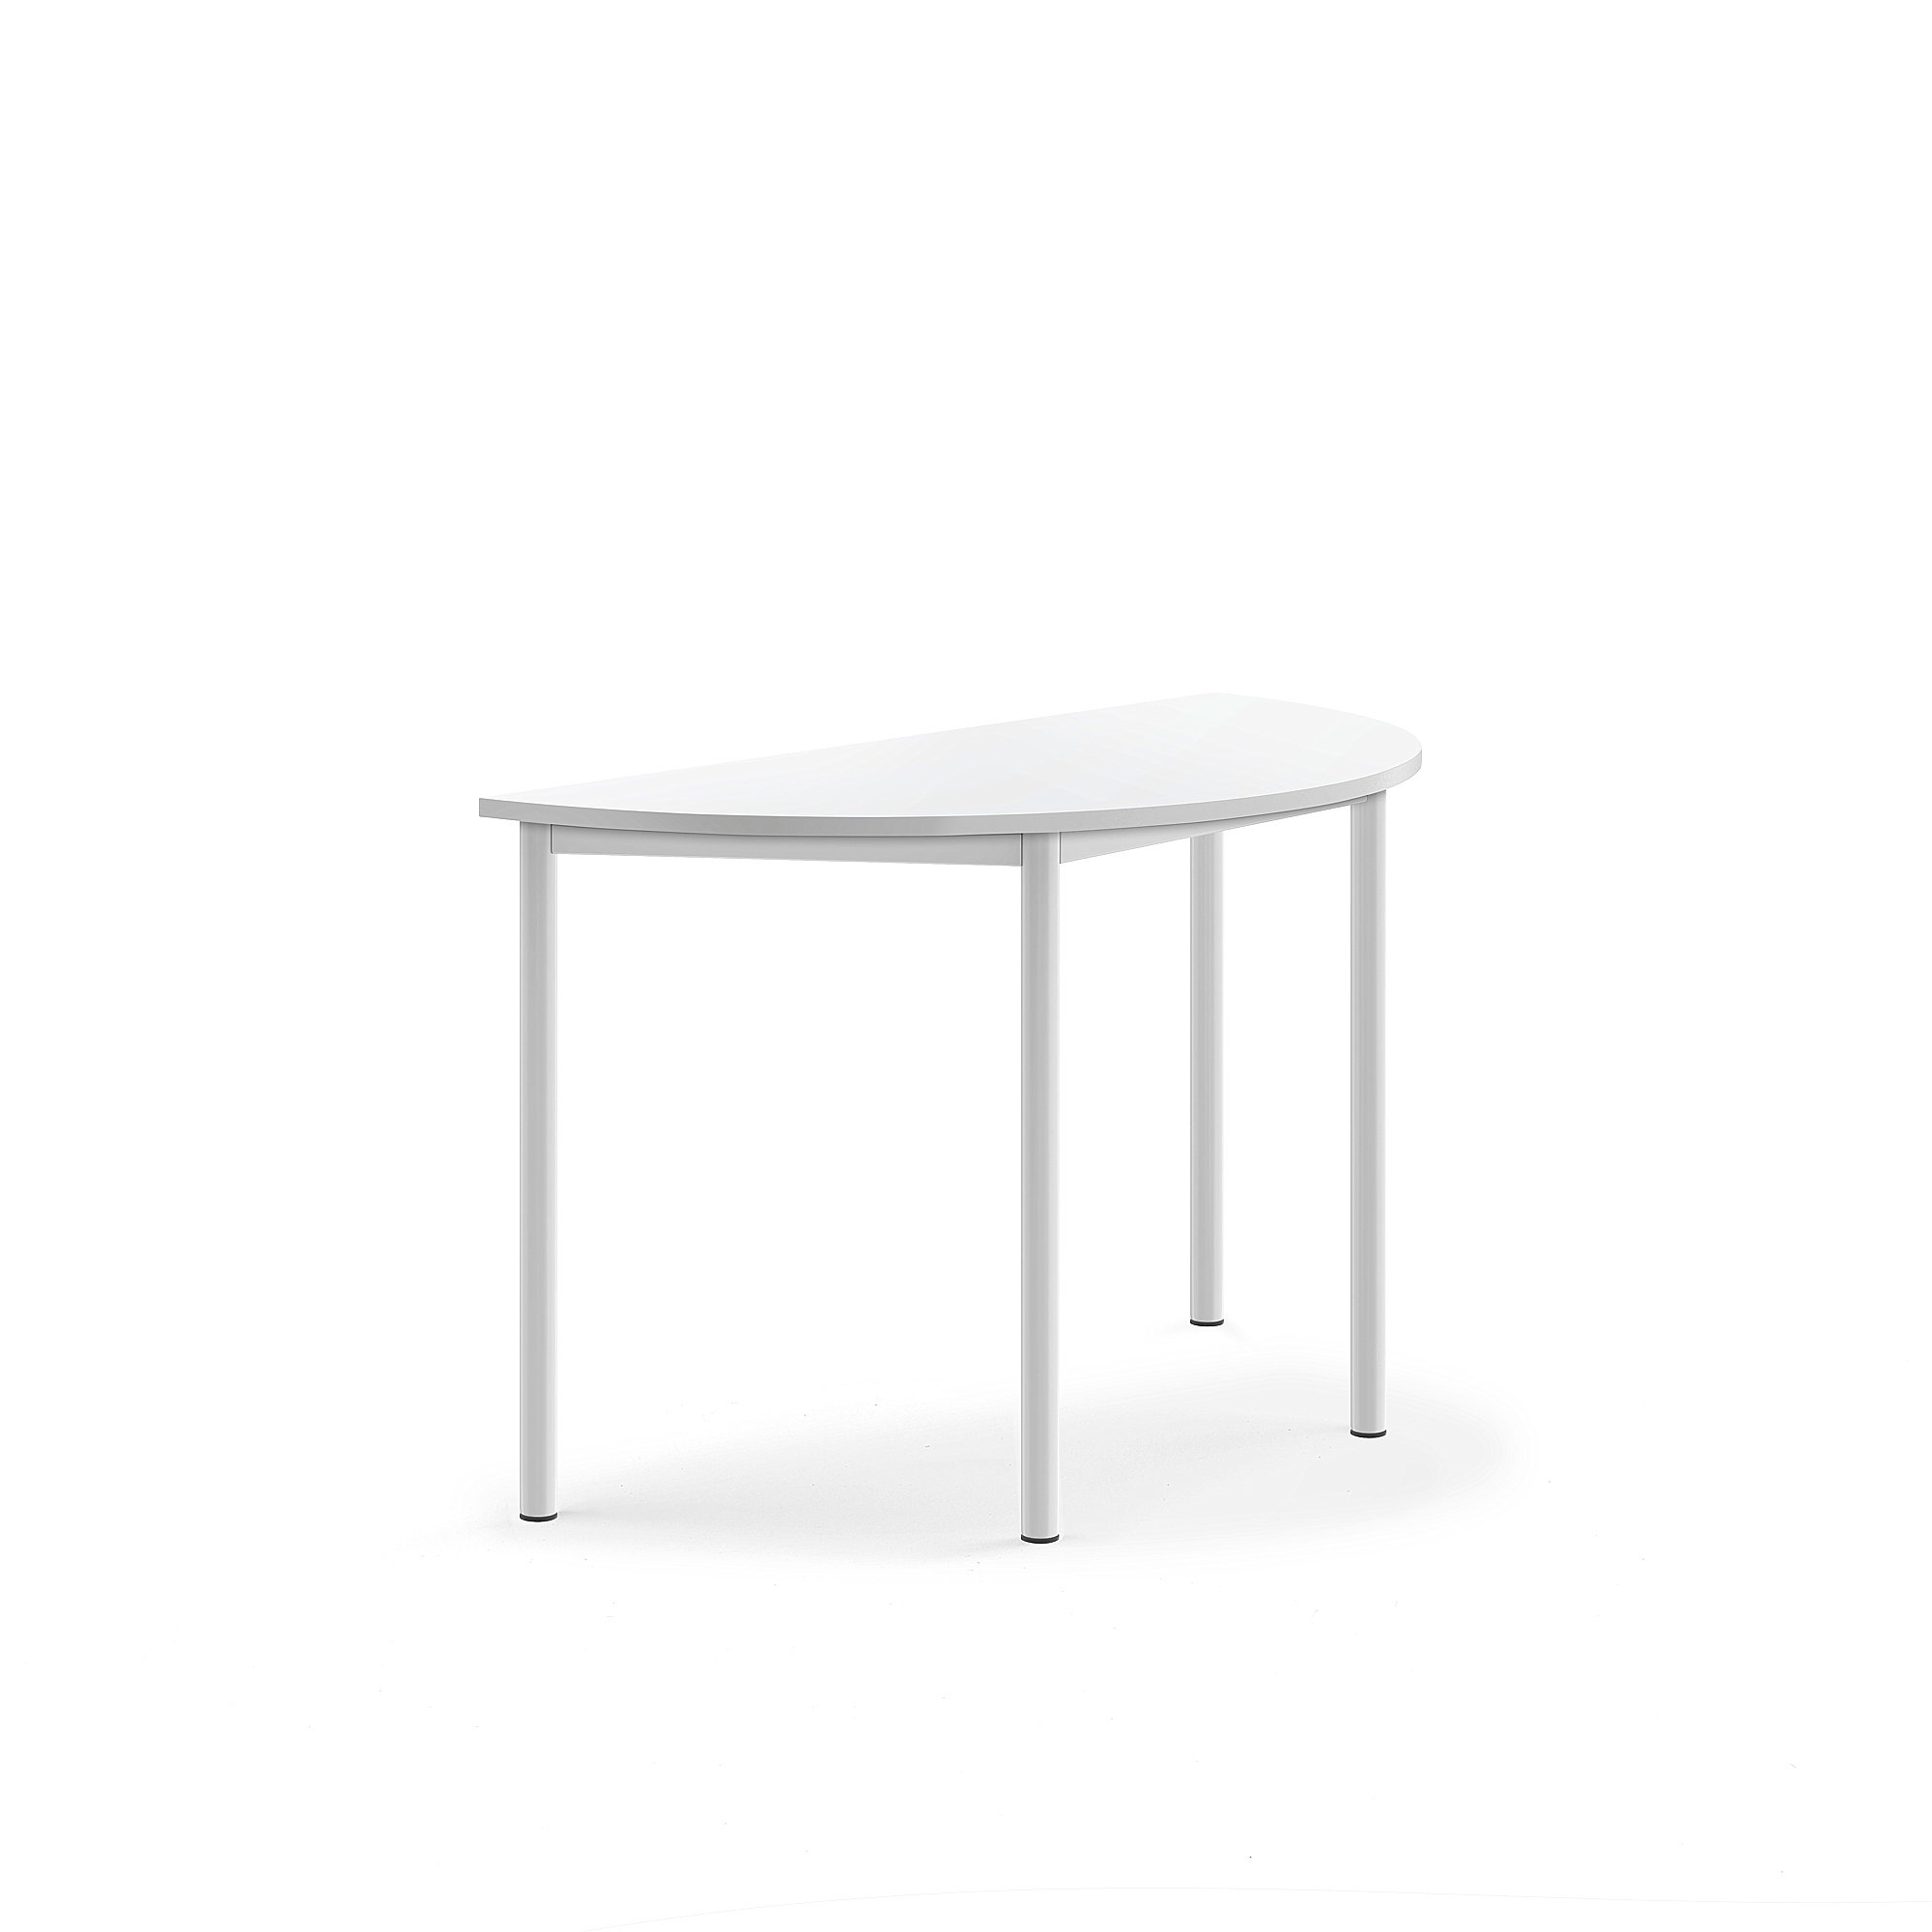 Stůl SONITUS, půlkruh, 1200x600x720 mm, bílé nohy, HPL deska tlumící hluk, bílá